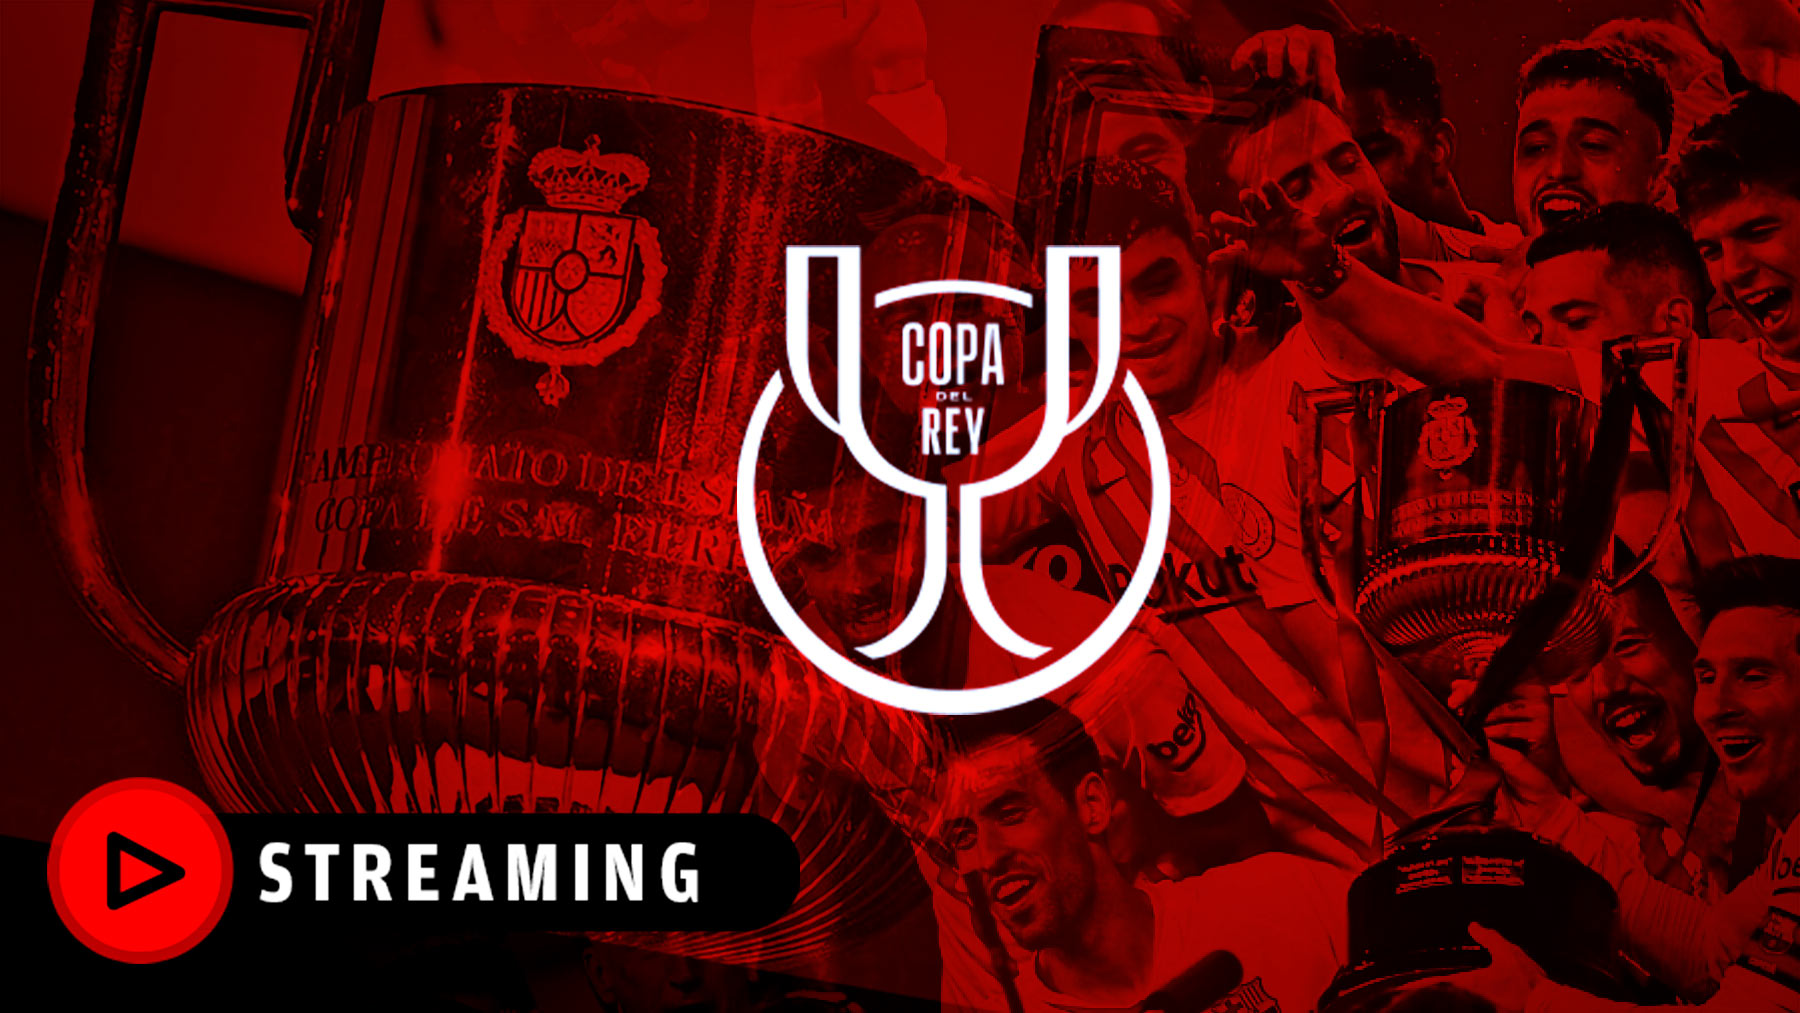 El sorteo de la Copa del Rey hoy, streaming en directo